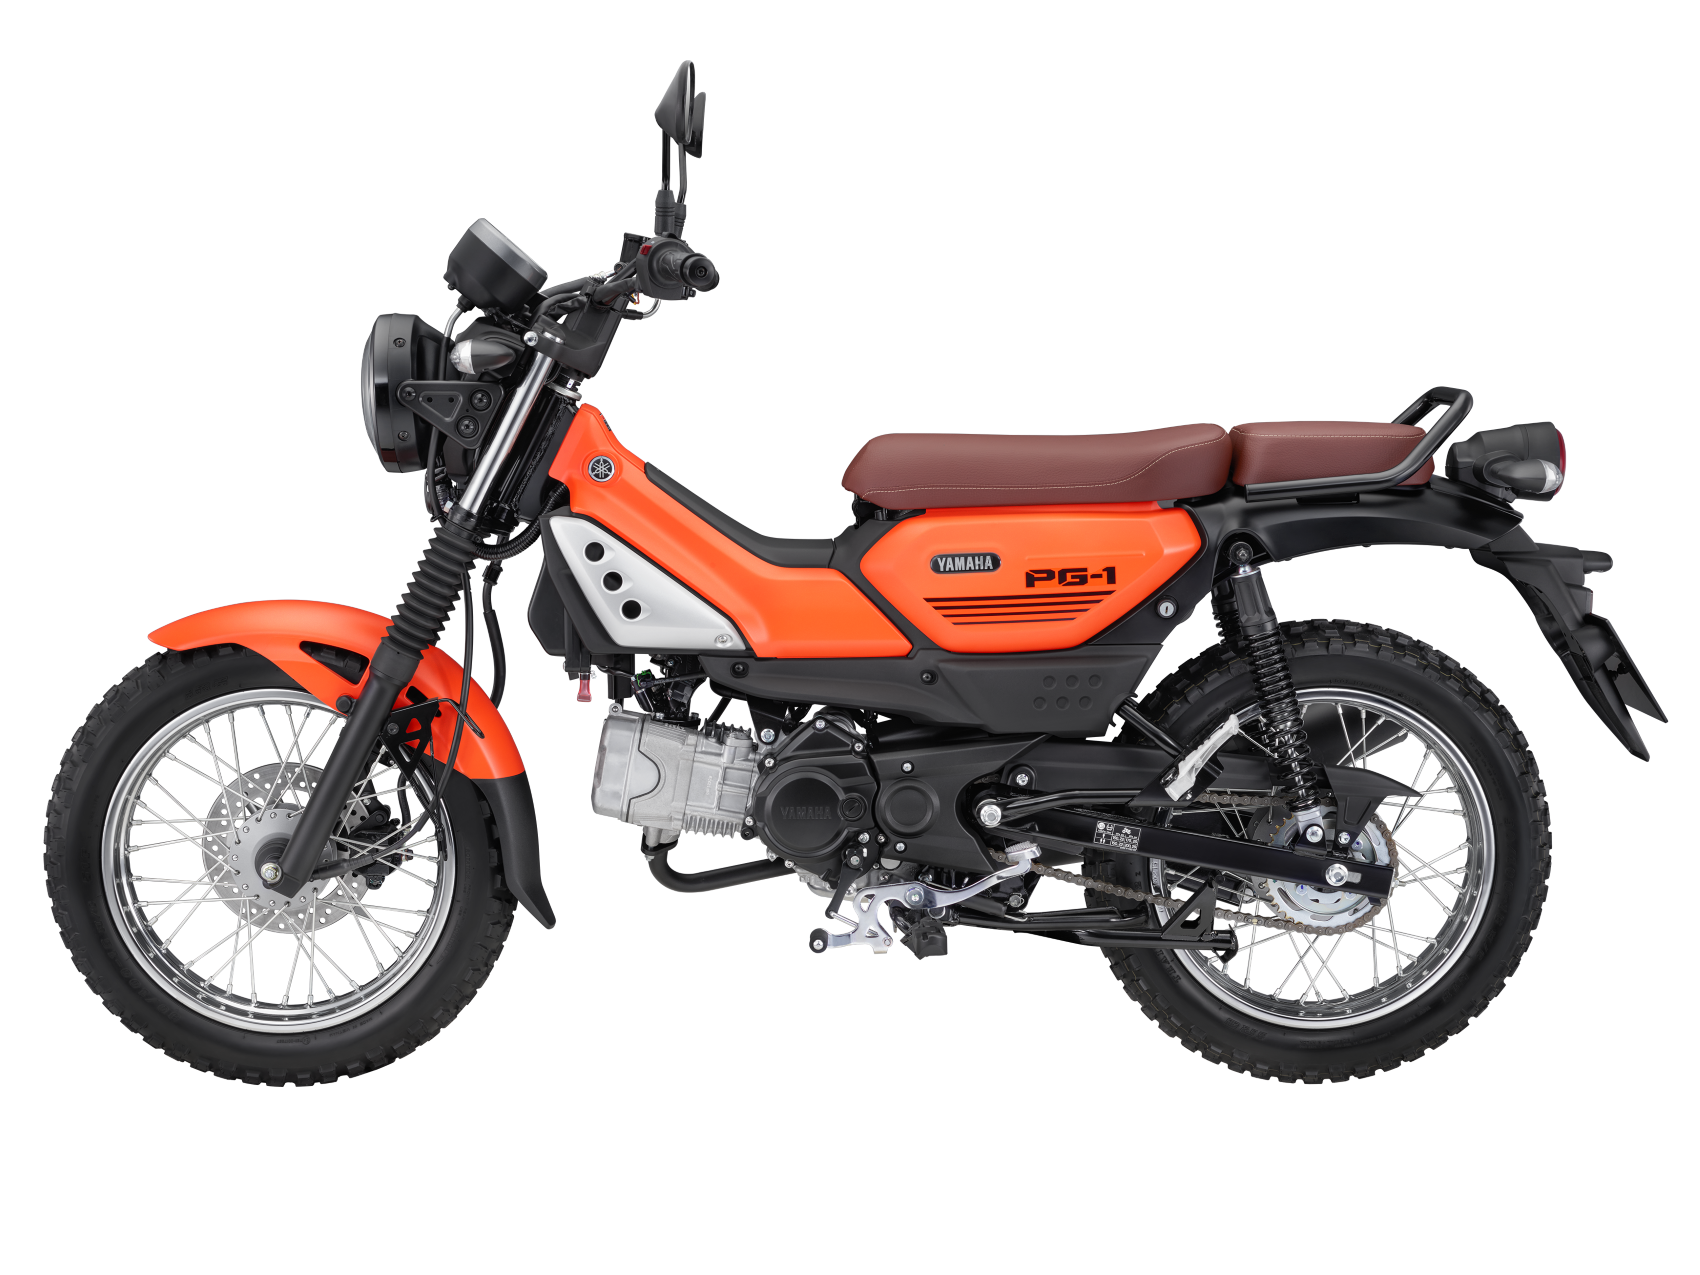 Xe máy Yamaha PG-1 hướng đến GenZ thích phượt giá chỉ hơn 30 triệu đồng